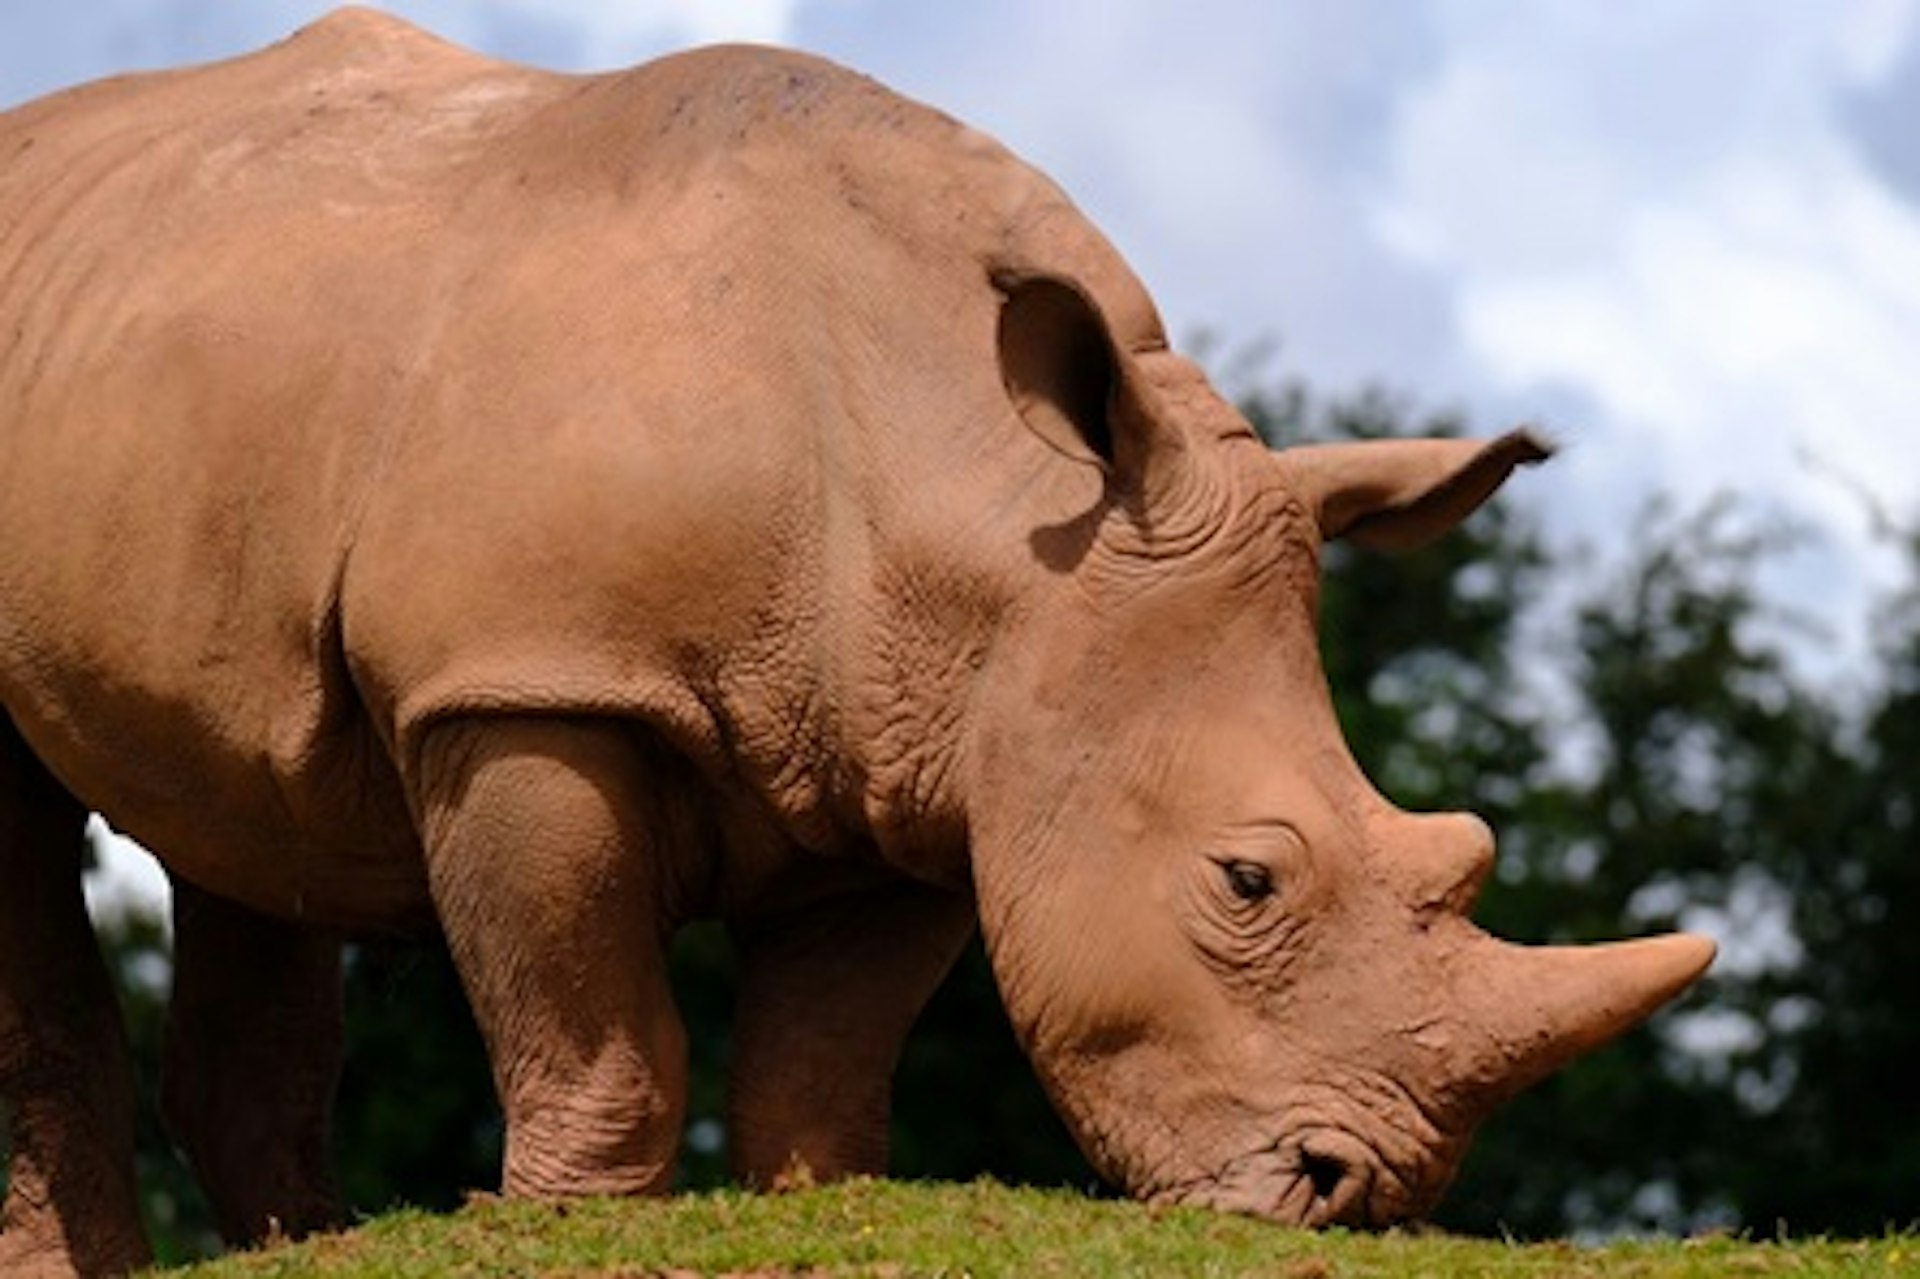 White Rhino Encounter with Day Admission to South Lakes Safari Zoo 2